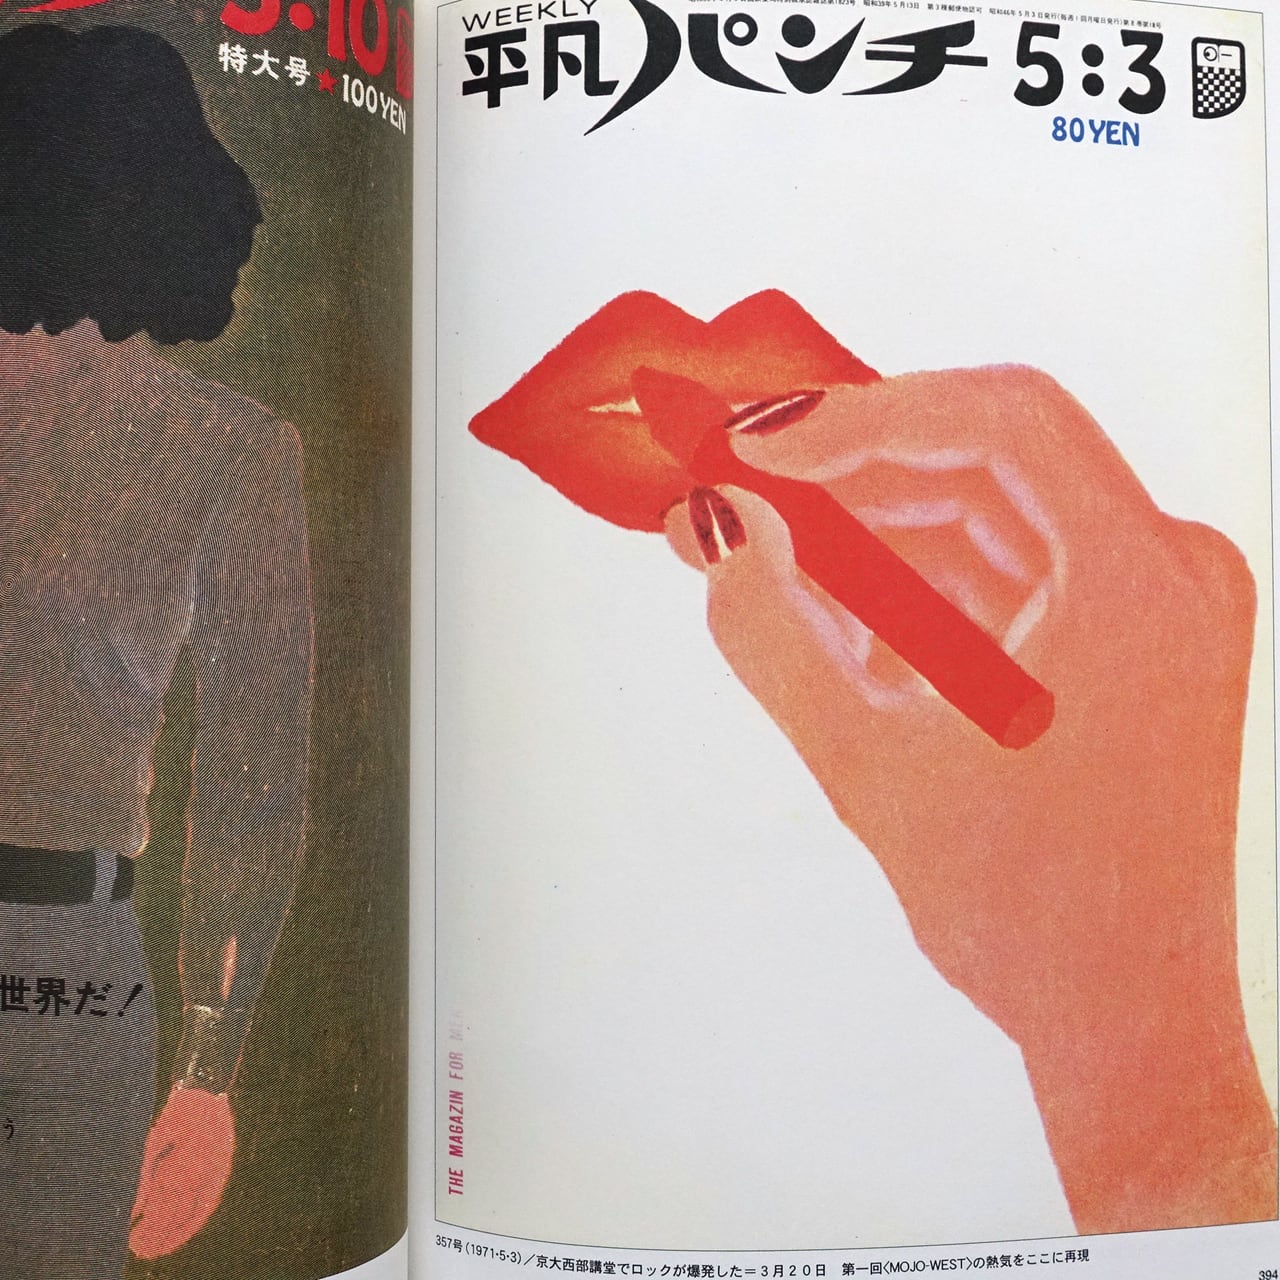 ファッションの ij24 平凡パンチ 1965年5月3日 表紙 大橋歩